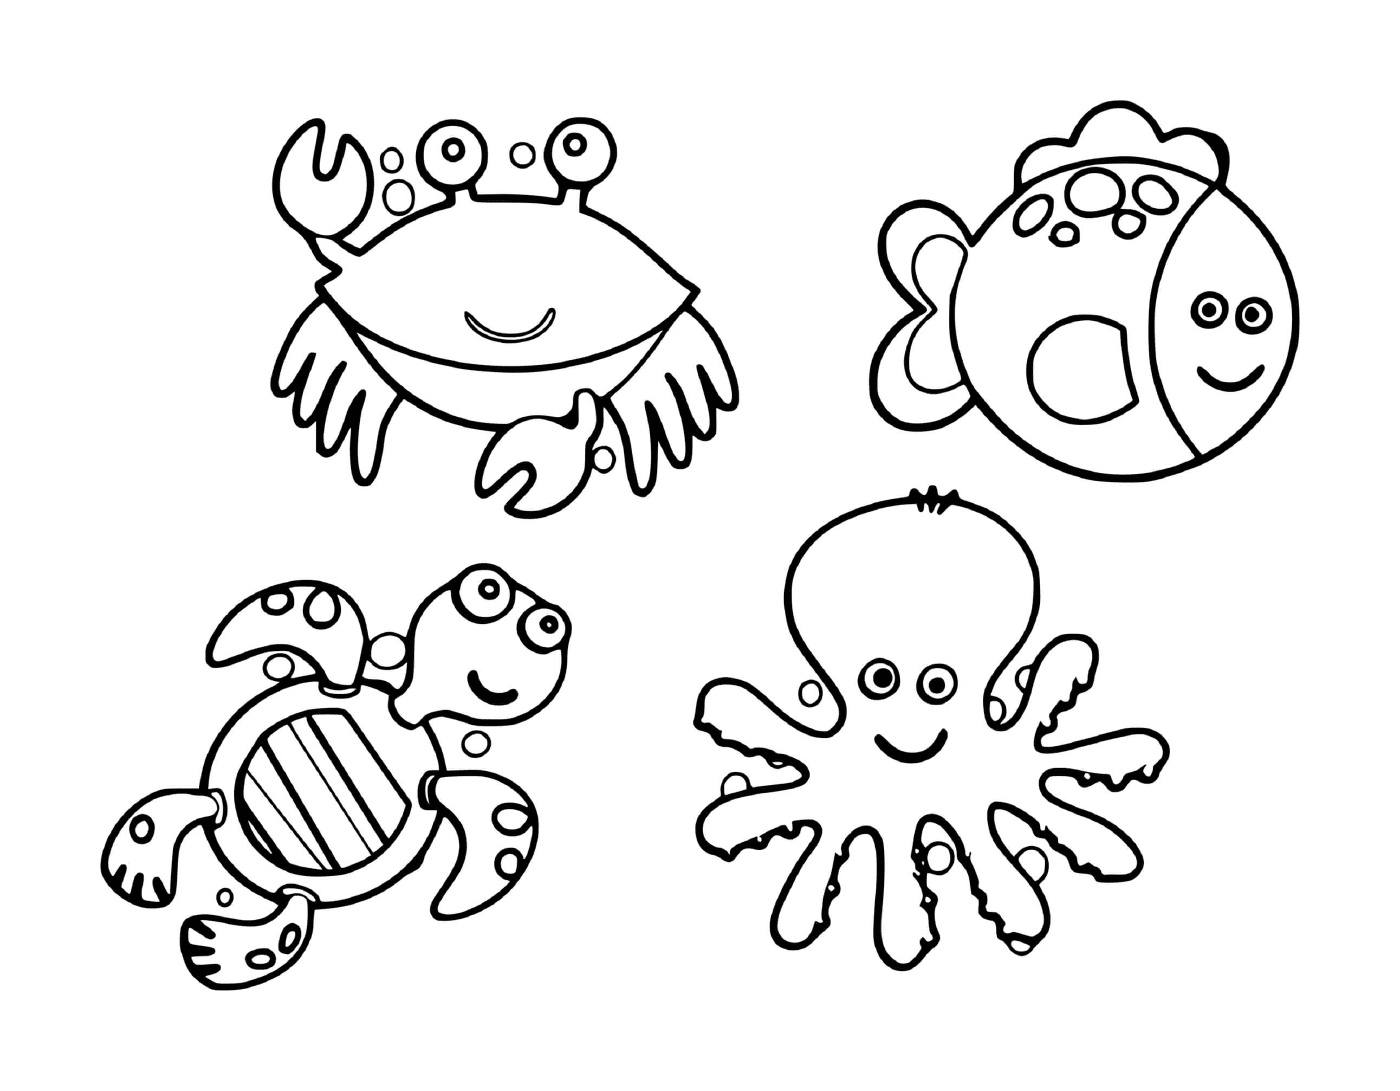   un groupe d'animaux marins dans l'eau, comprenant des poissons, des crabes, des tortues et des pieuvres 